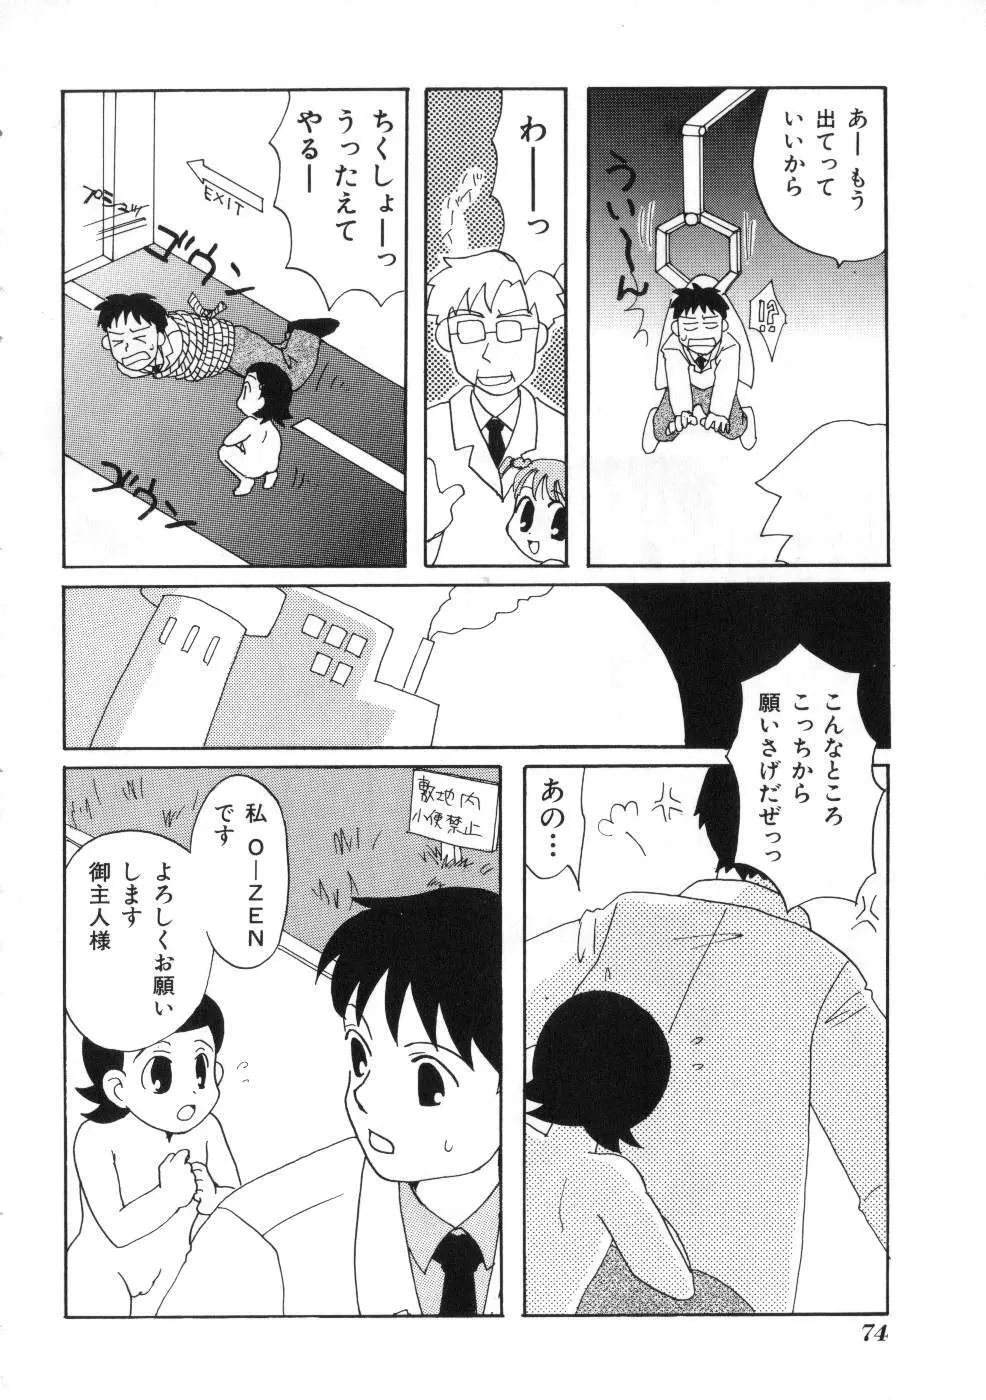 Miss ちゃいどる vol. 1 74ページ